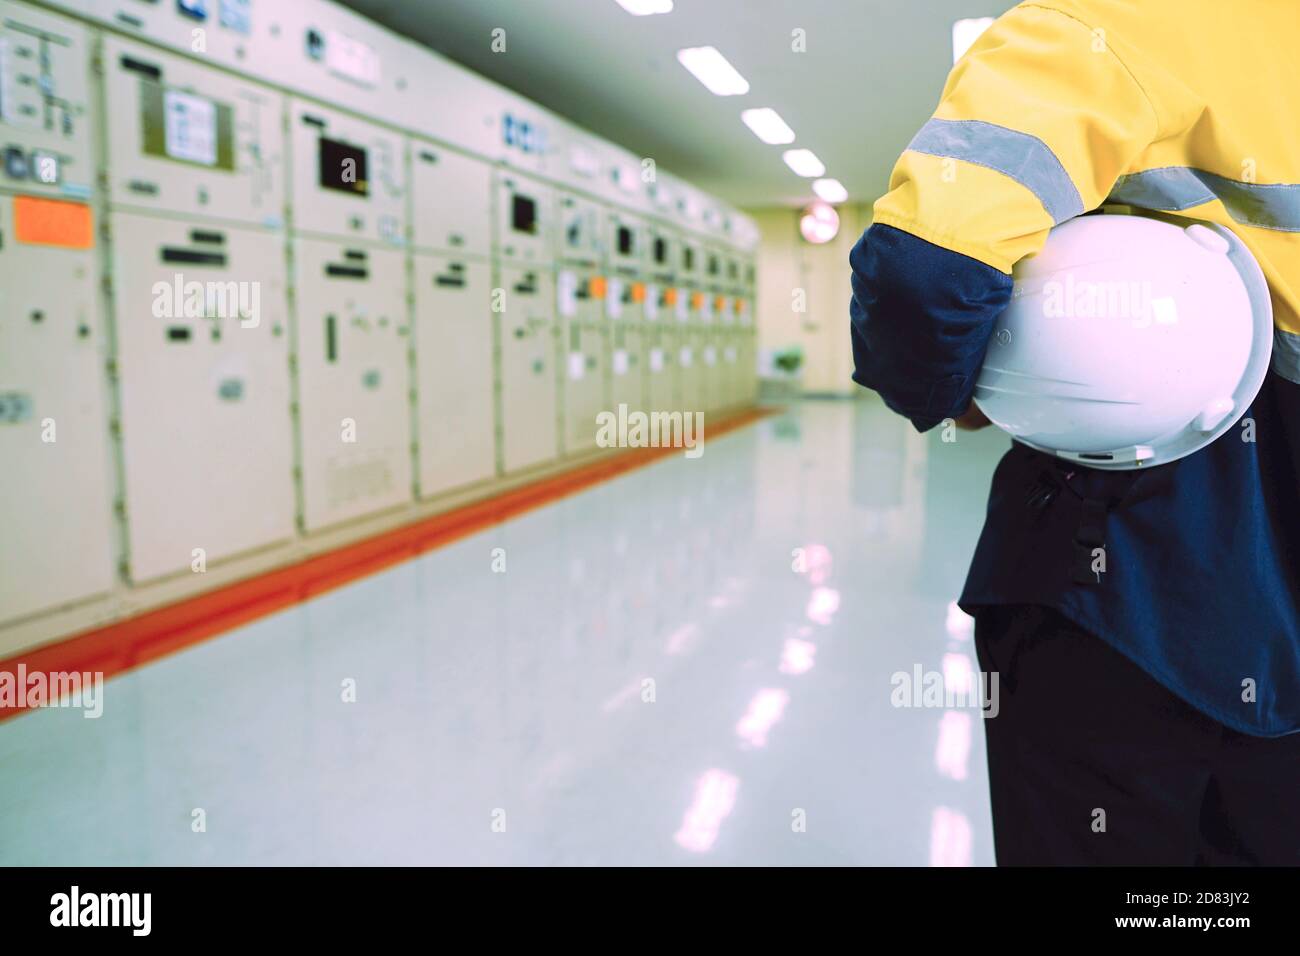 Ingegnere maschile che indossa una uniforme gialla e indossa un cappello di sicurezza bianco, ispezionando i sistemi elettrici in una grande centrale elettrica. Foto Stock